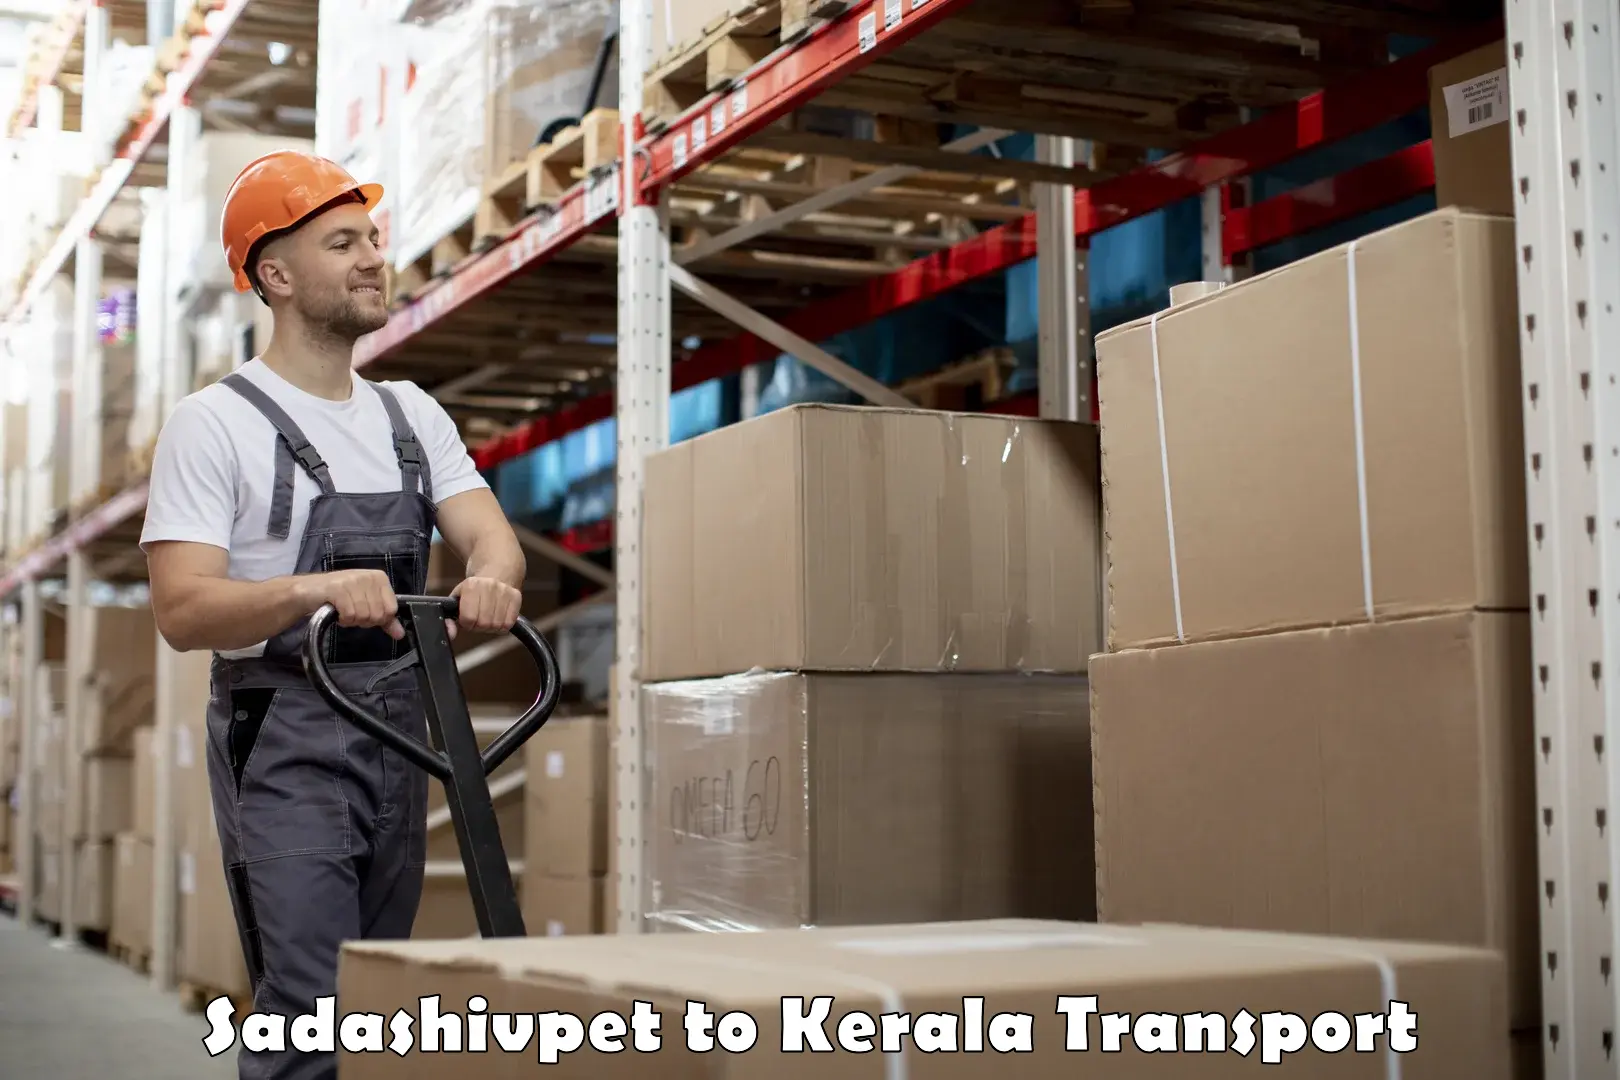 Furniture transport service Sadashivpet to Edappal